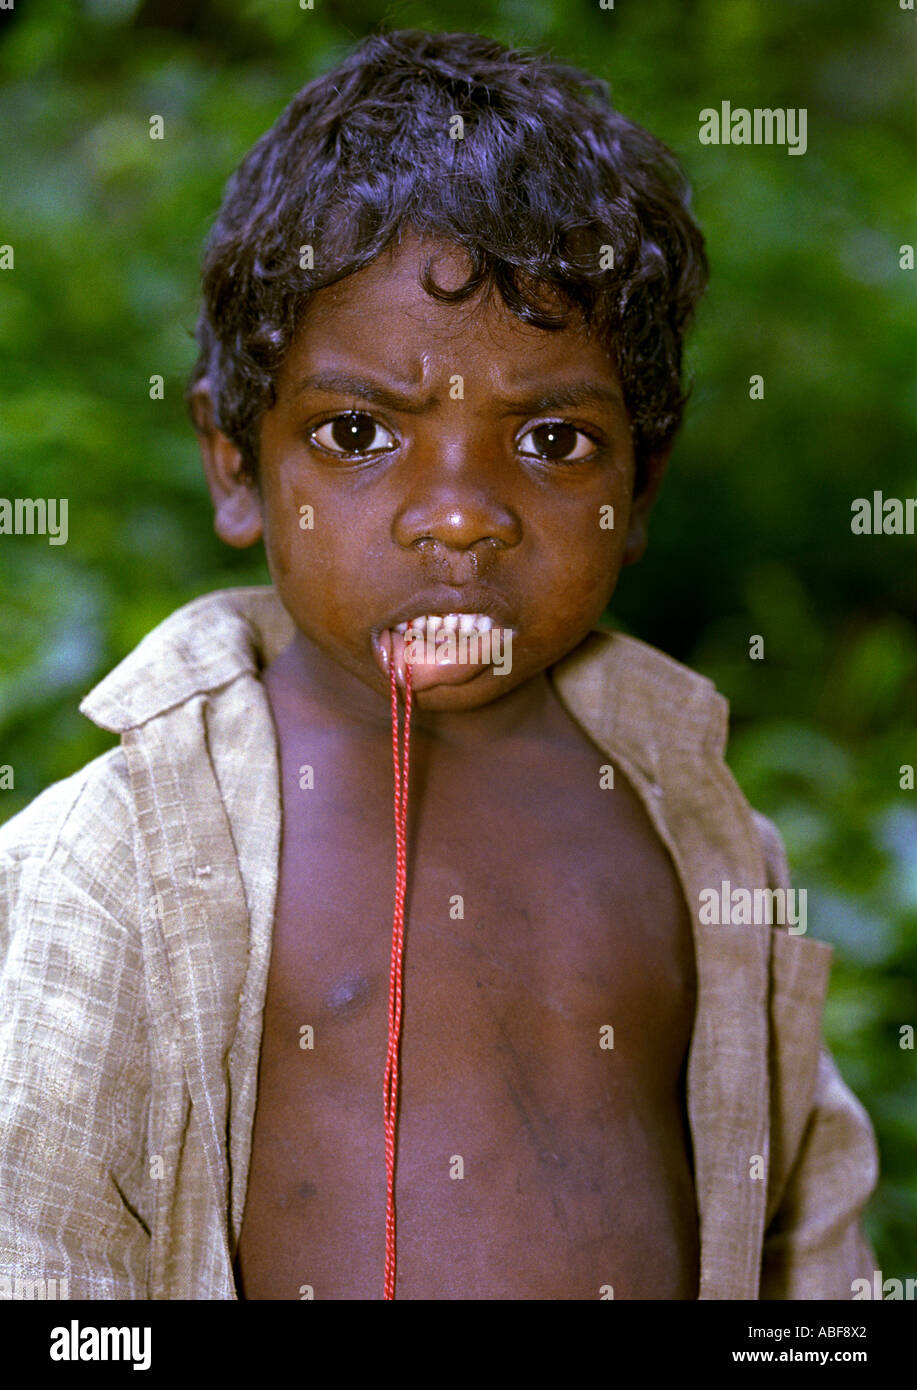 Un garçonnet de cinq ans qui appartiennent à la communauté autochtone et vit dans les jungles du Kerala Inde Banque D'Images